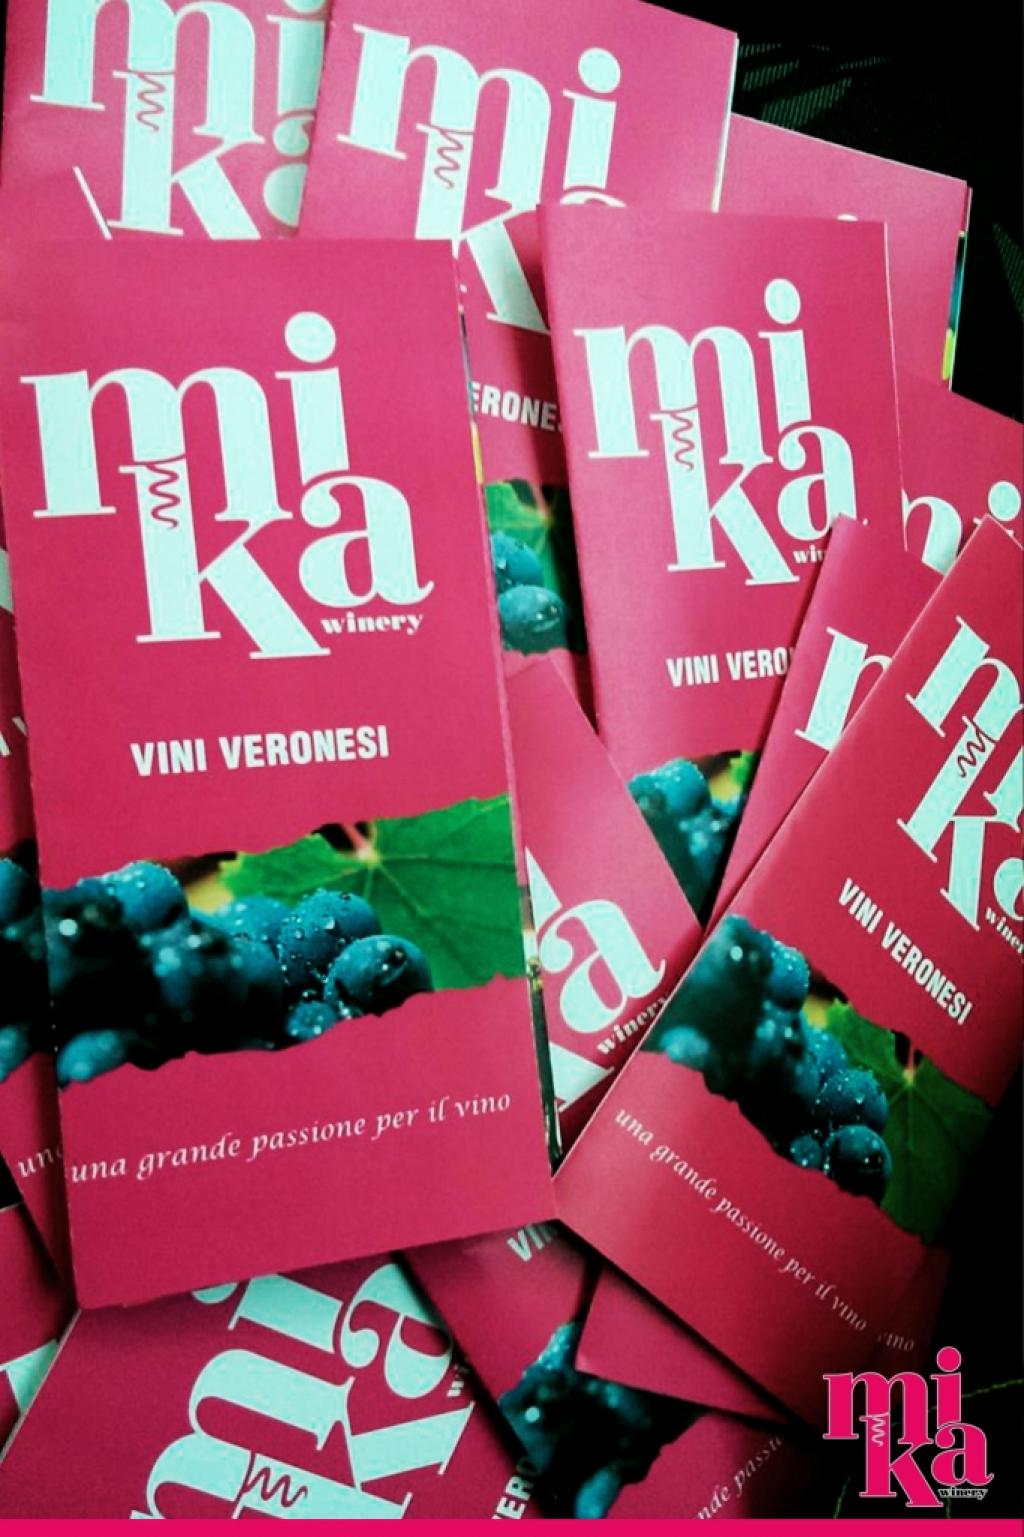 Servizio fotografico e grafica pubblicitaria per aperitivo promozionale - Mika Winery